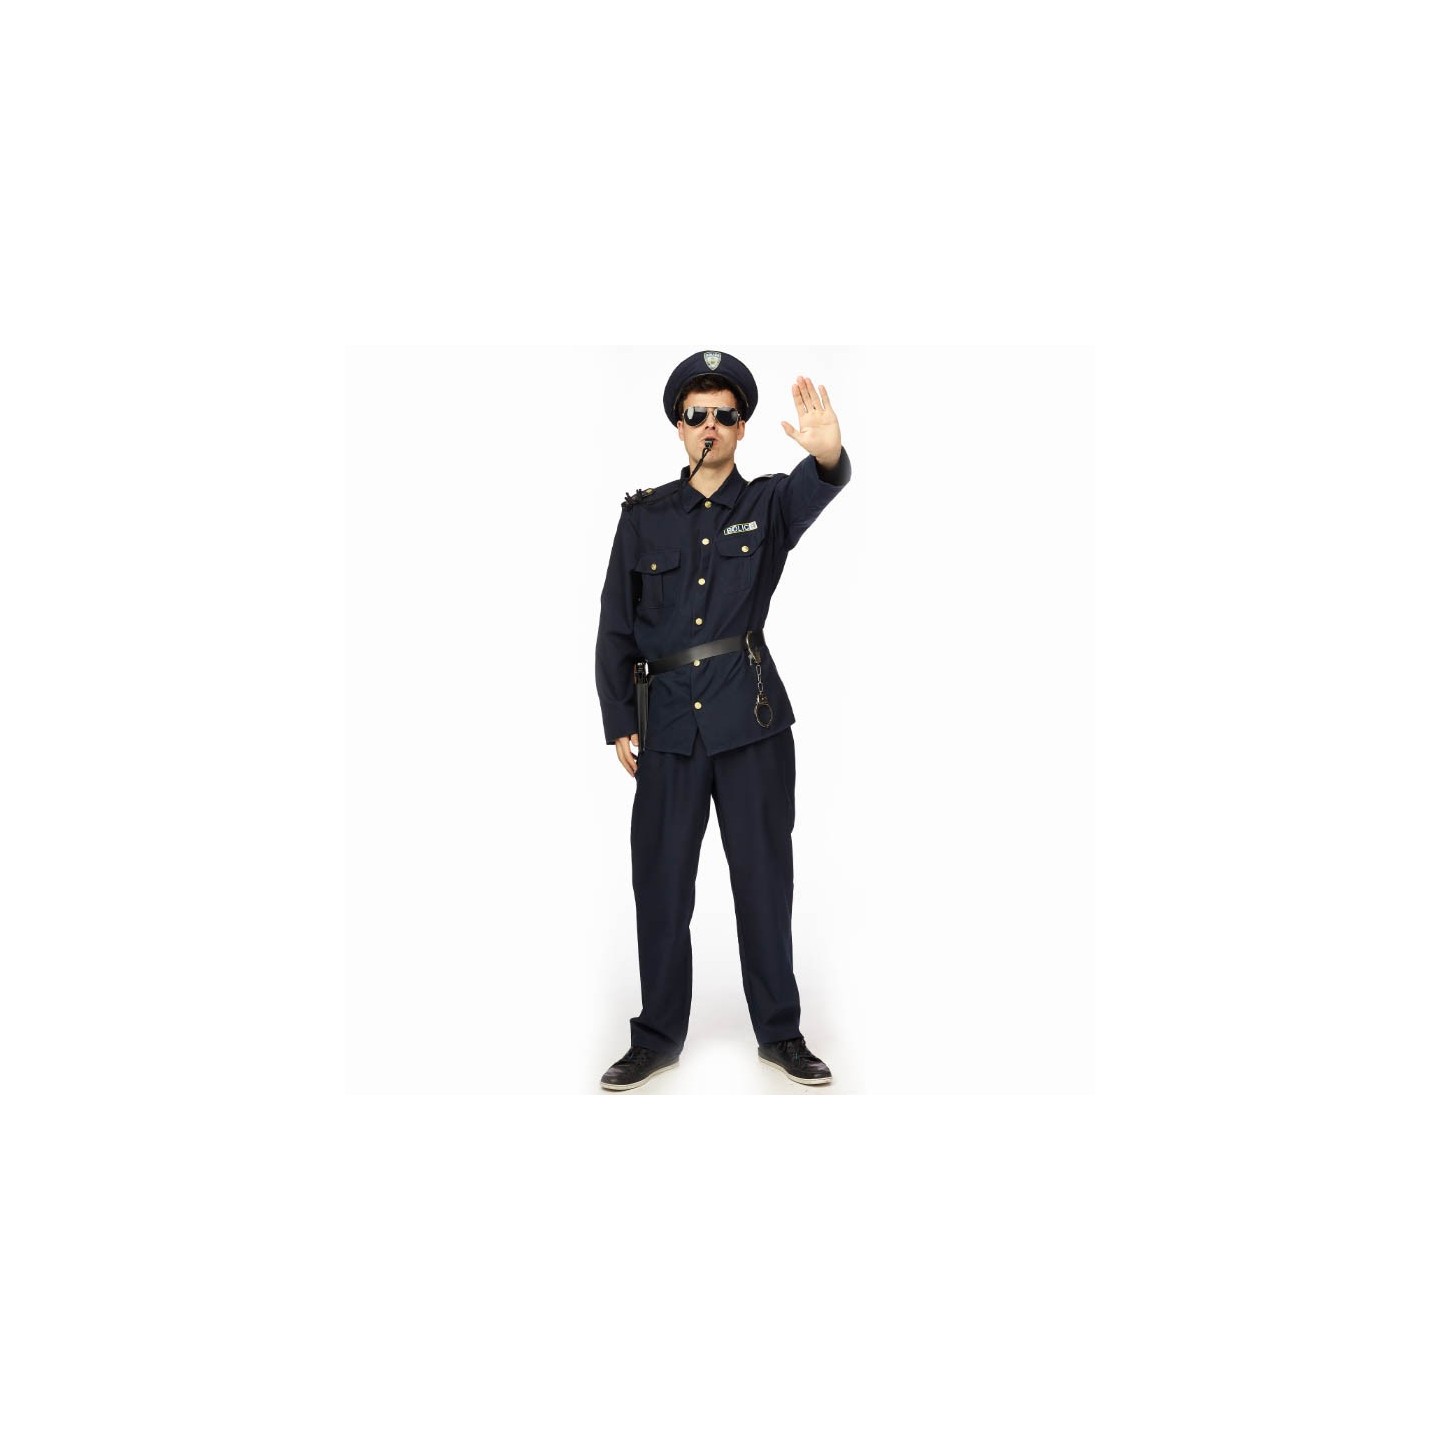 ik ontbijt eer Van storm Politie kostuum heren - Politiepak Carnaval| Jokershop.be